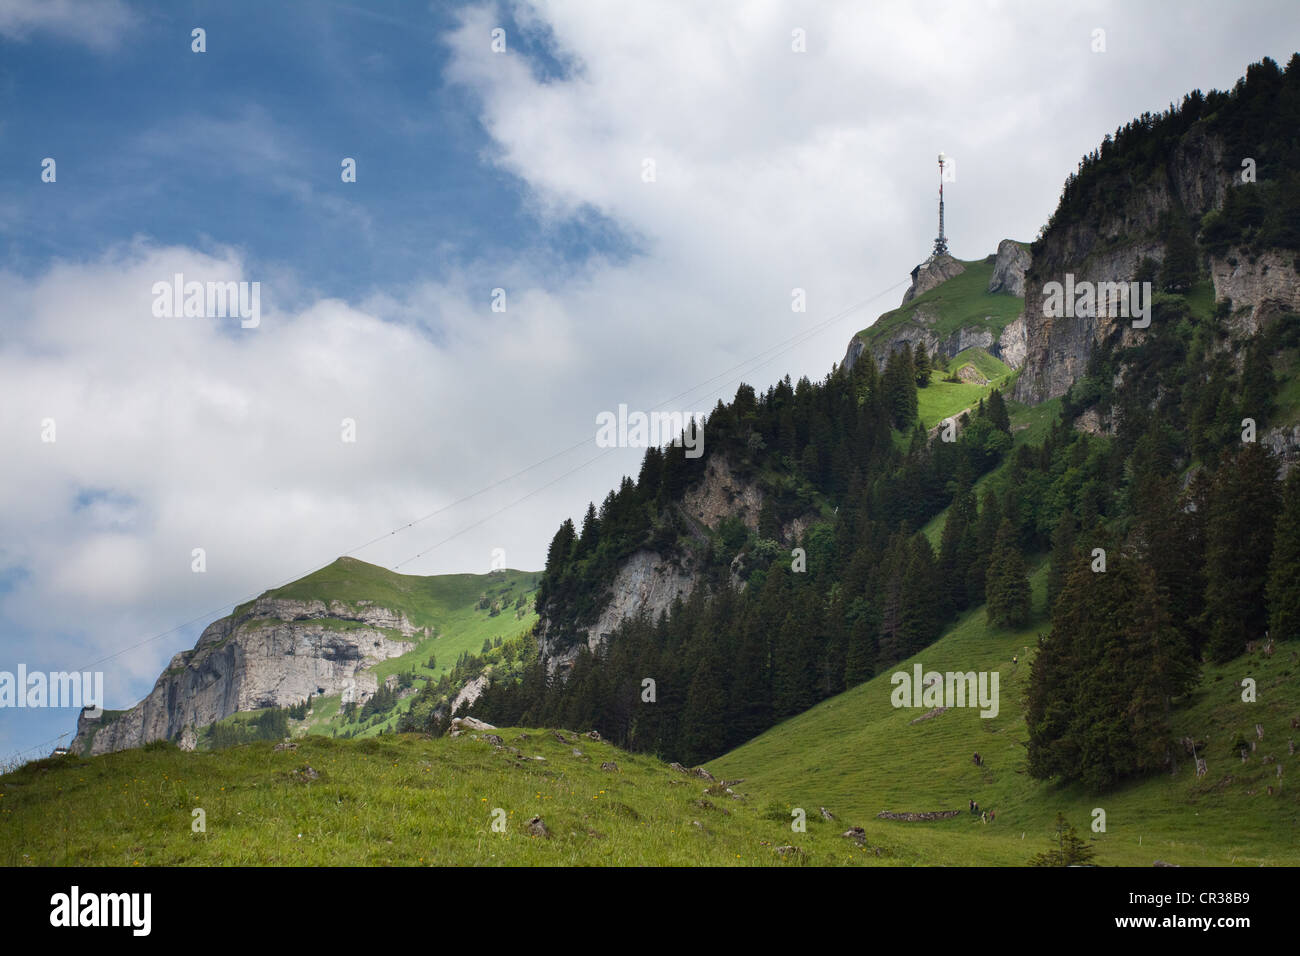 Mt Hoher Kasten, 1795m, form Soll Alp mountain pasture, Bruelisau, Appenzell Ausserrhoden or Outer Rhodes, Switzerland, Europe Stock Photo